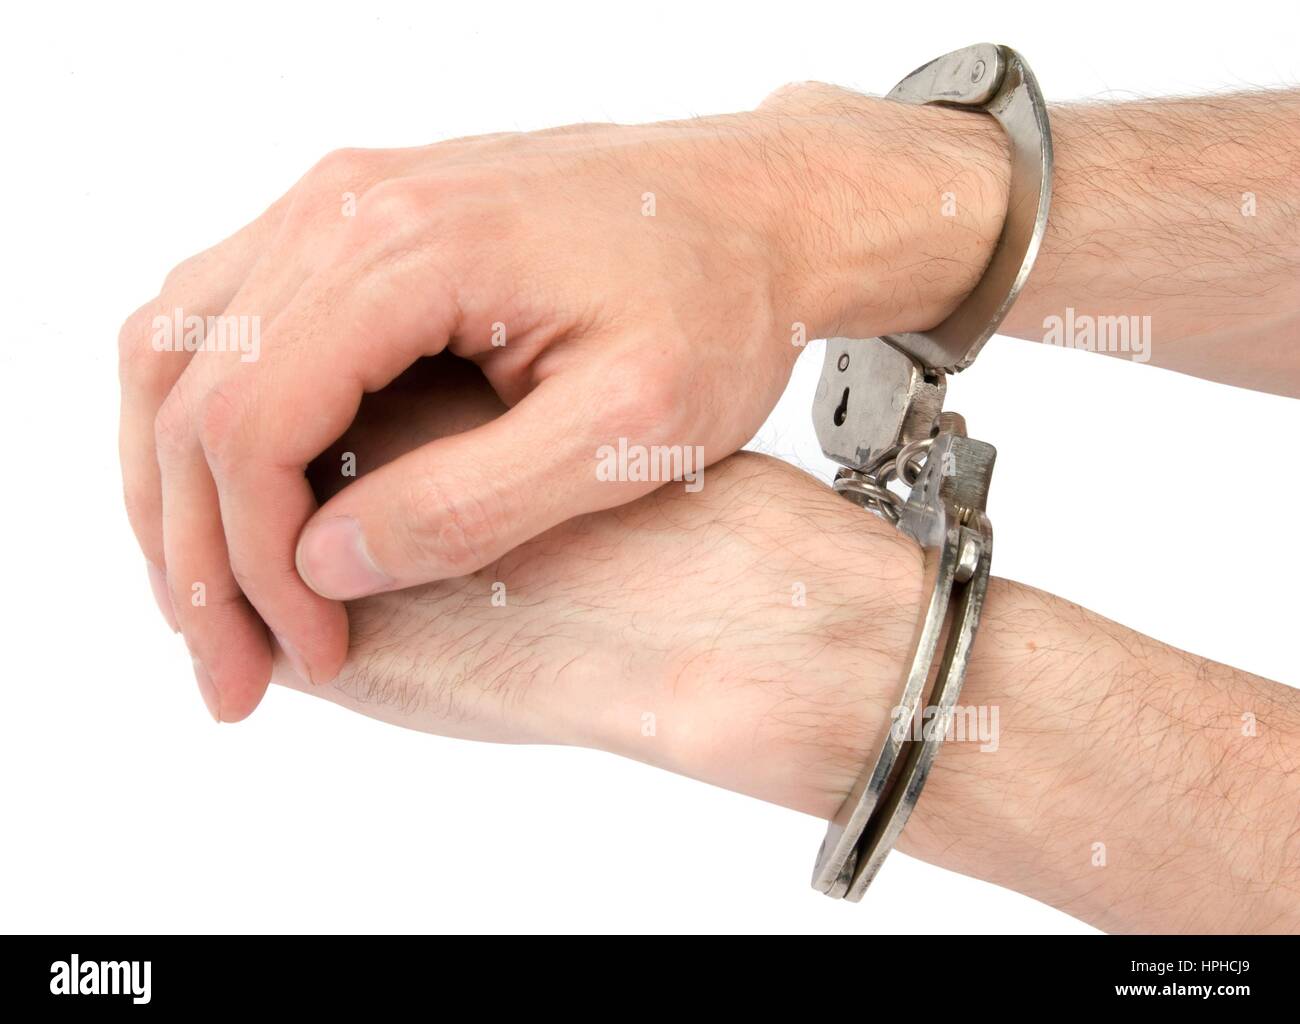 Парень надевает наручники. В наручниках. Руки в наручниках. Руки внаручиниках. Мужские руки в наручниках.